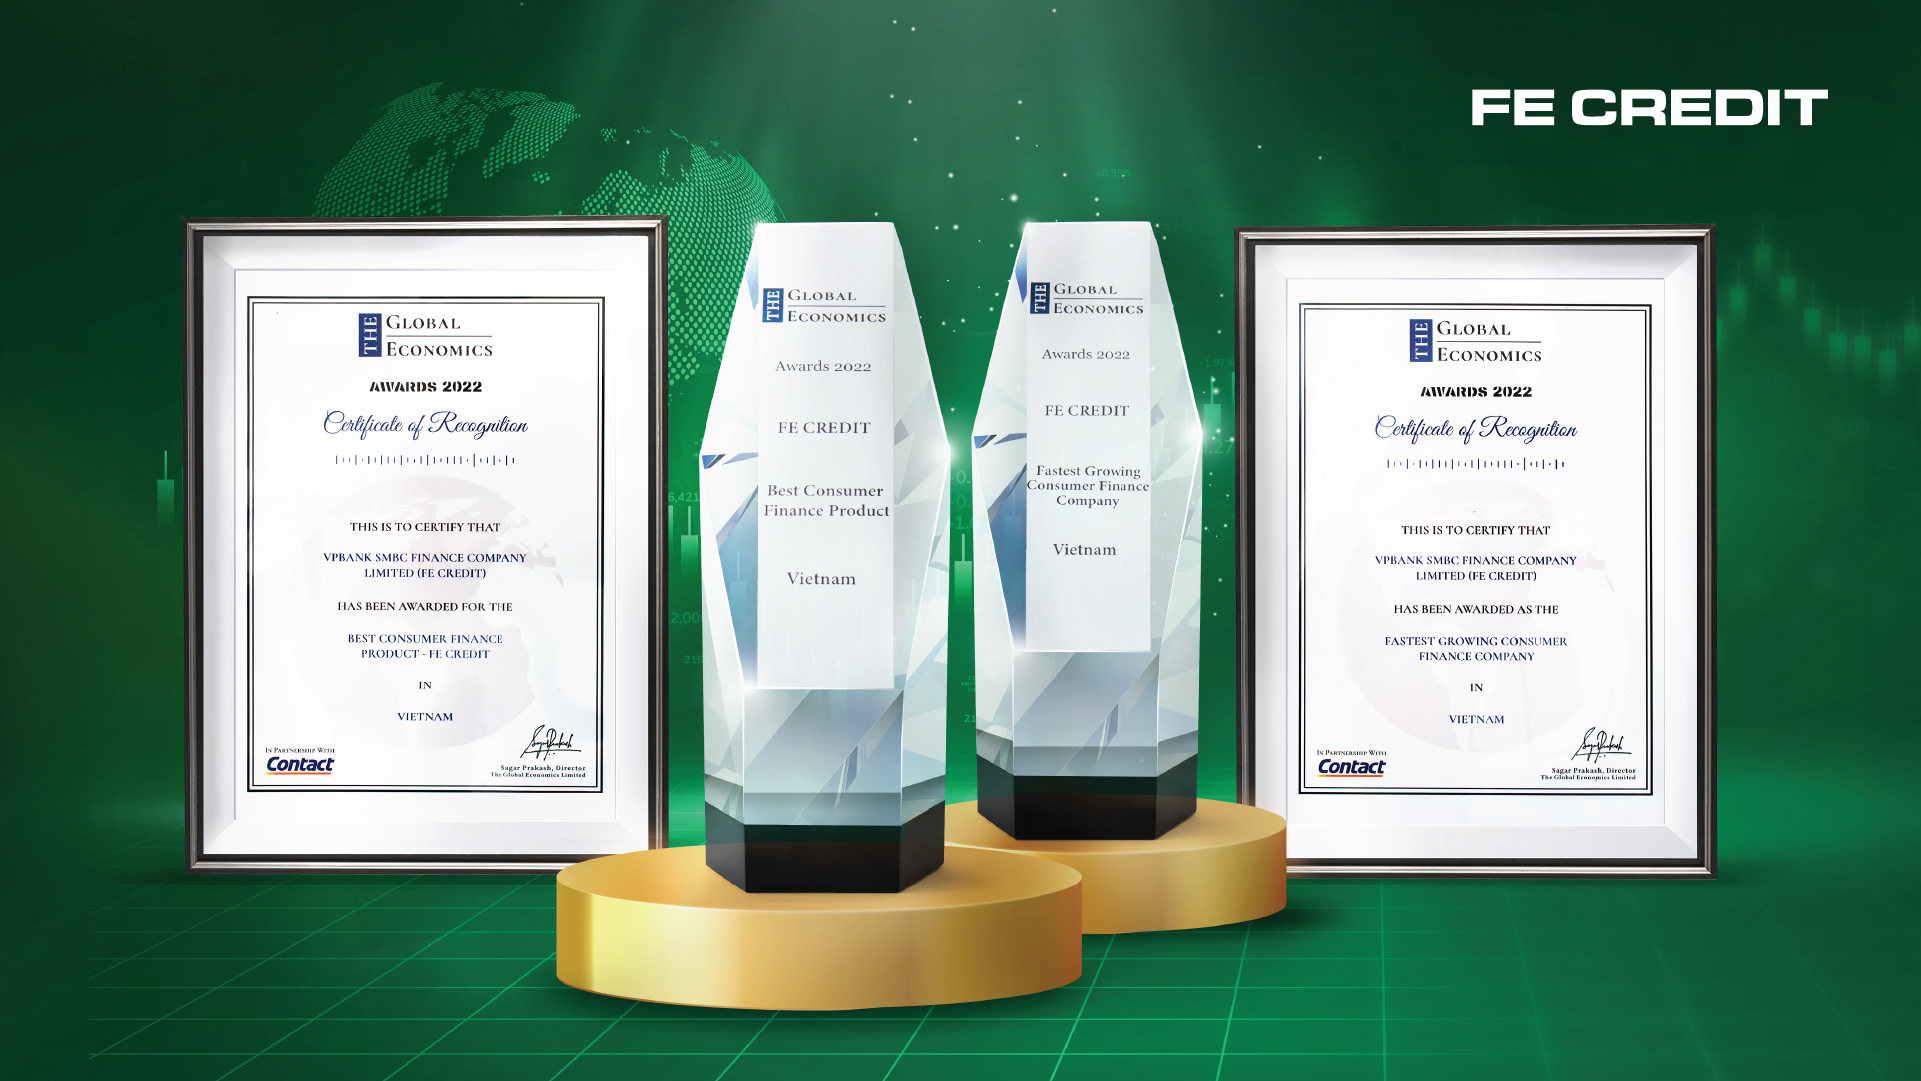 FE CREDIT vinh dự nhận 2 giải thưởng quốc tế từ tạp chí The Global Economics - Ảnh 1.